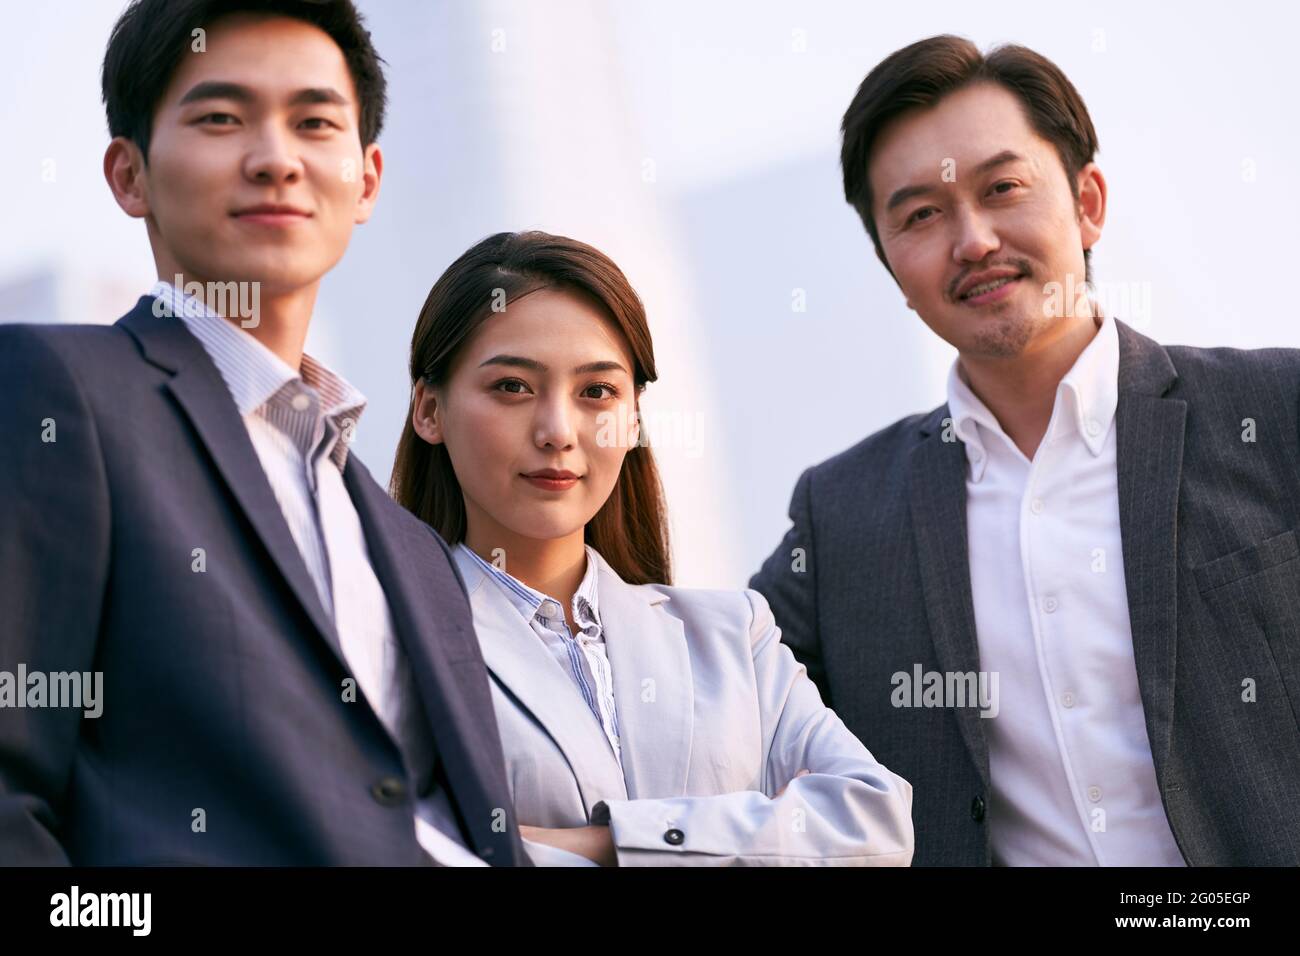 portrait extérieur de l'équipe de trois hommes d'affaires asiatiques prospères regarder l'appareil photo Banque D'Images